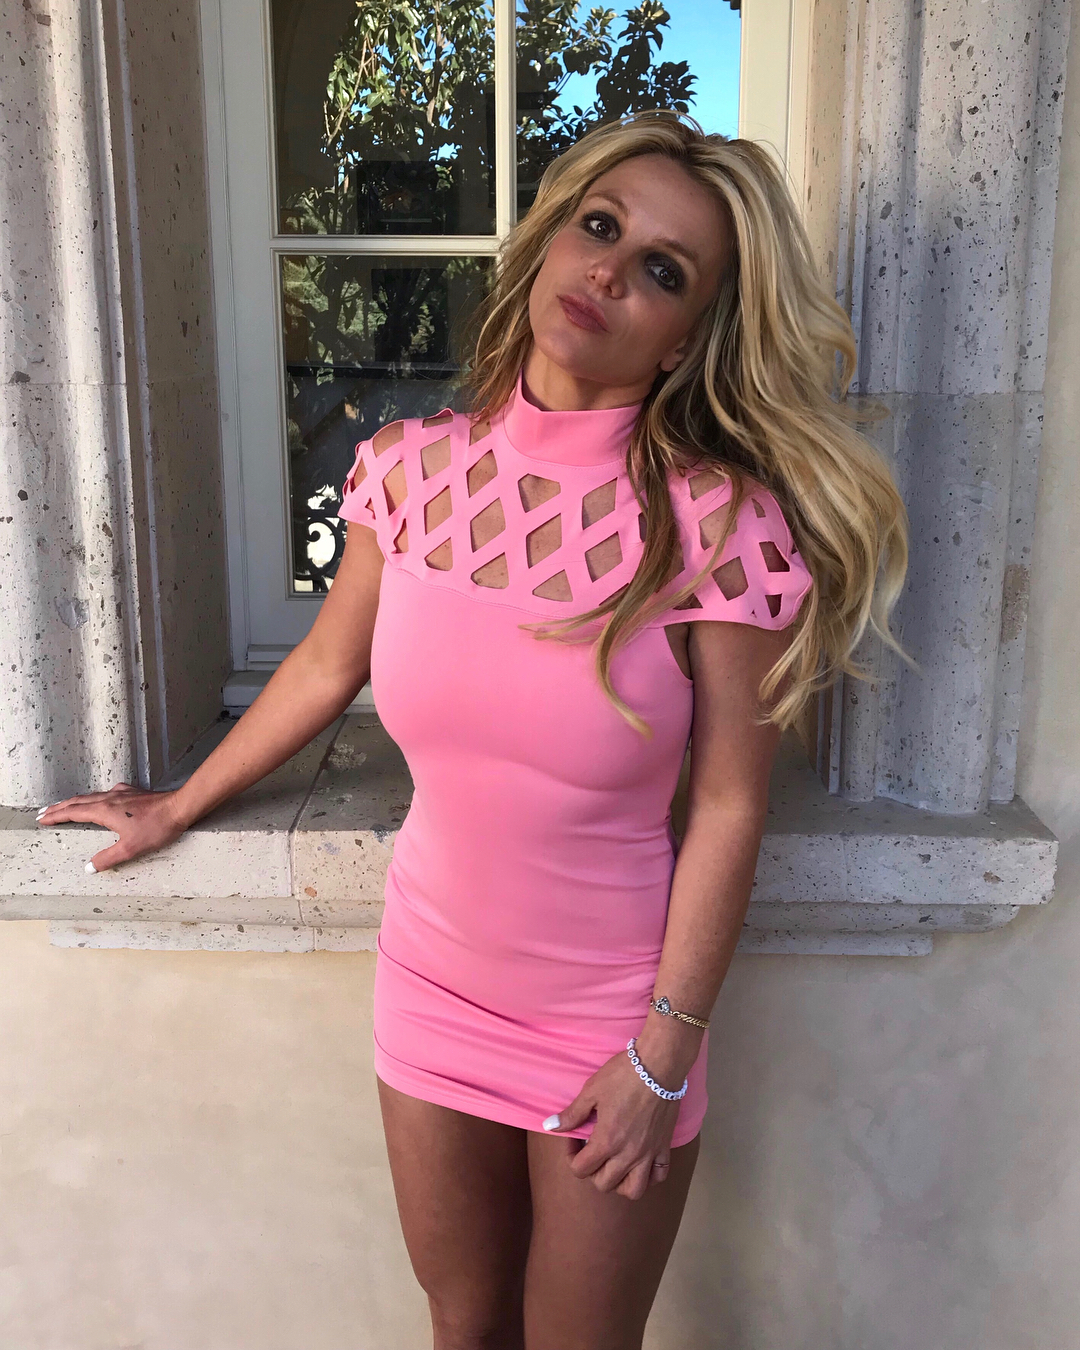 Novas imagens de Britney Spears dão a conhecer os resultados de meses de treinos físicos intensos. Há até quem não reconheça a cantora.